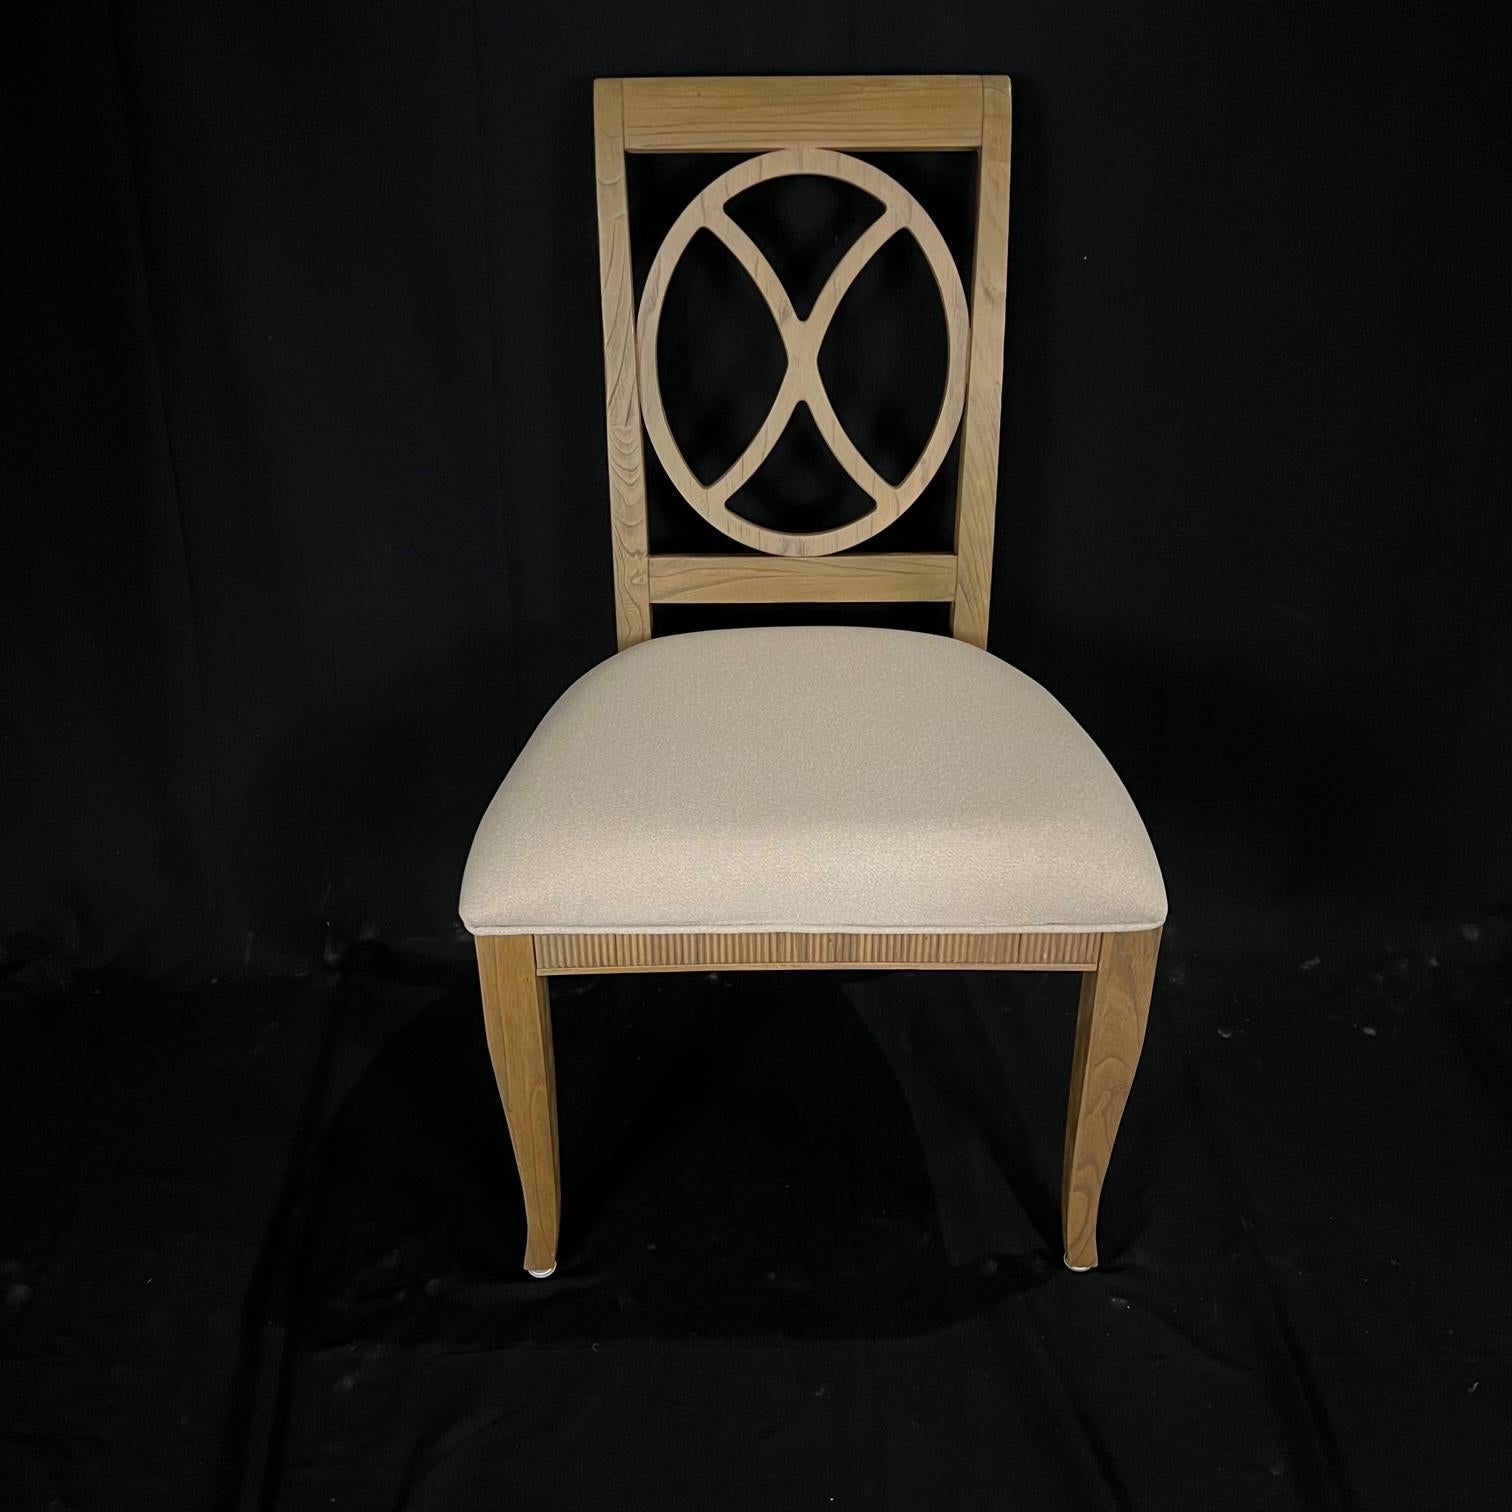 Schöne kontrastierende gedämpfte Farben in diesem Satz von 6 Ringrückenstühlen aus gebleichter Eiche. Schöne geriffelte Sitzschienen und khakifarbene Oberfläche. 
Neue, hochwertige, neutrale Baumwoll-Polyester-Mischgewebe auf den Sitzen. 
Maße: